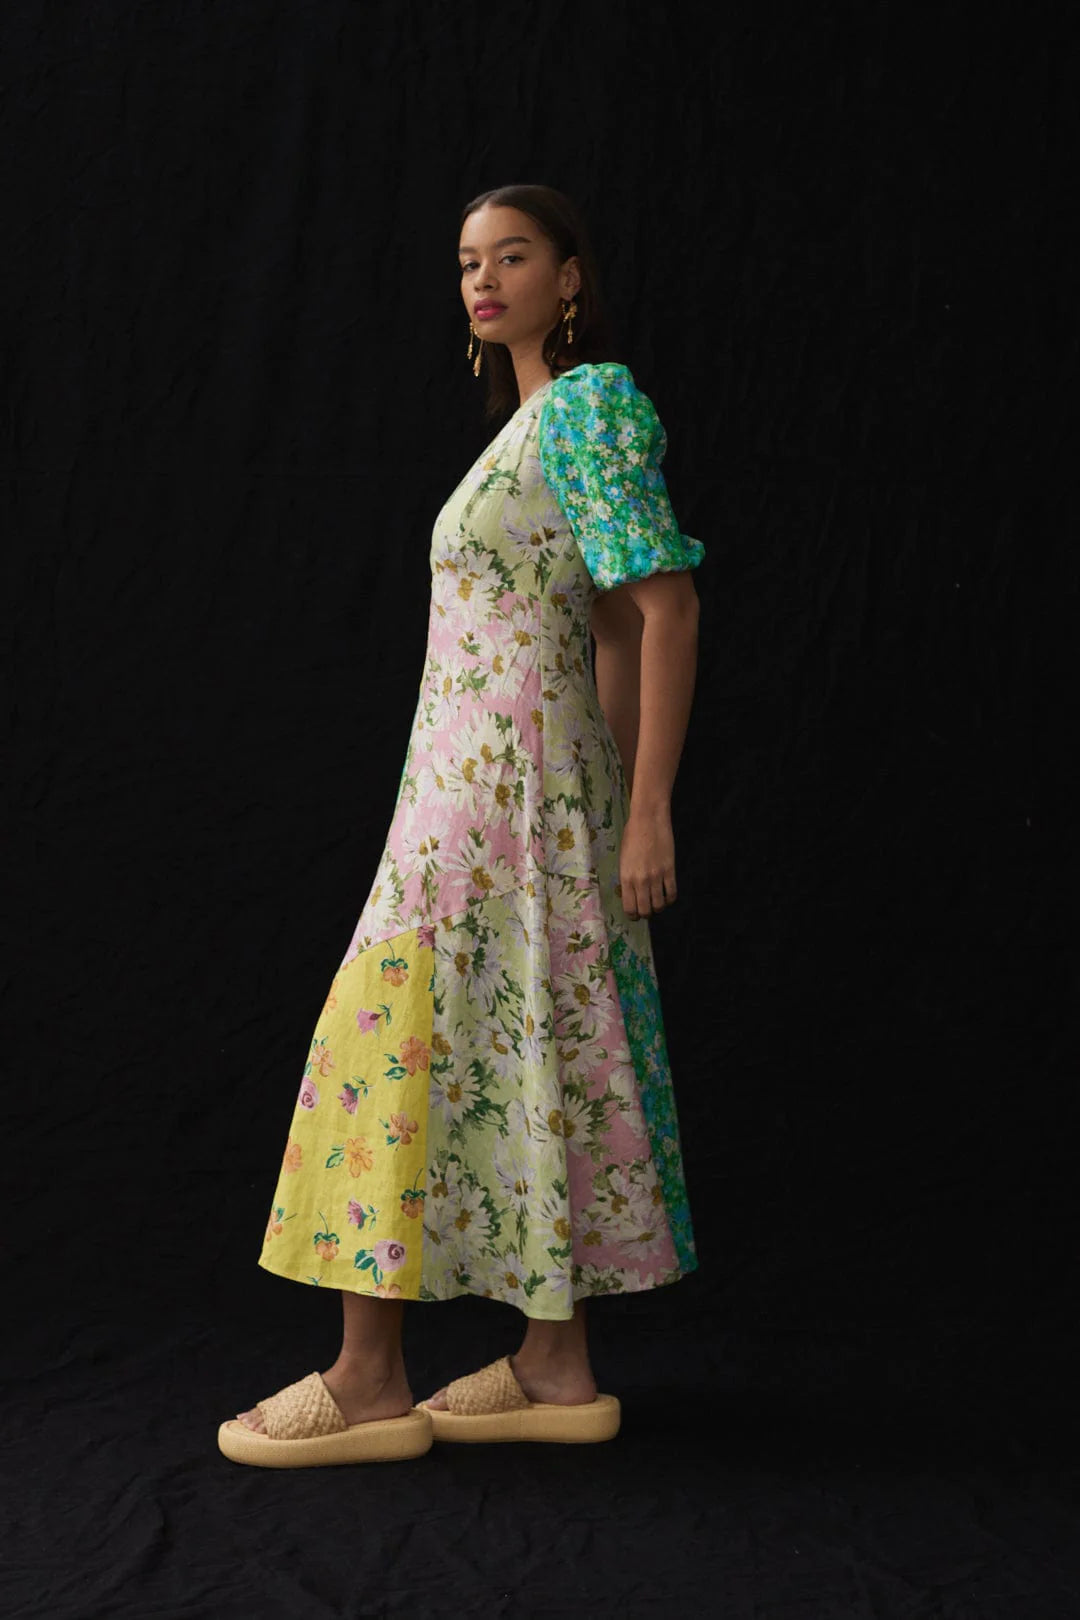 Kenzie Patchwork Midi Dress